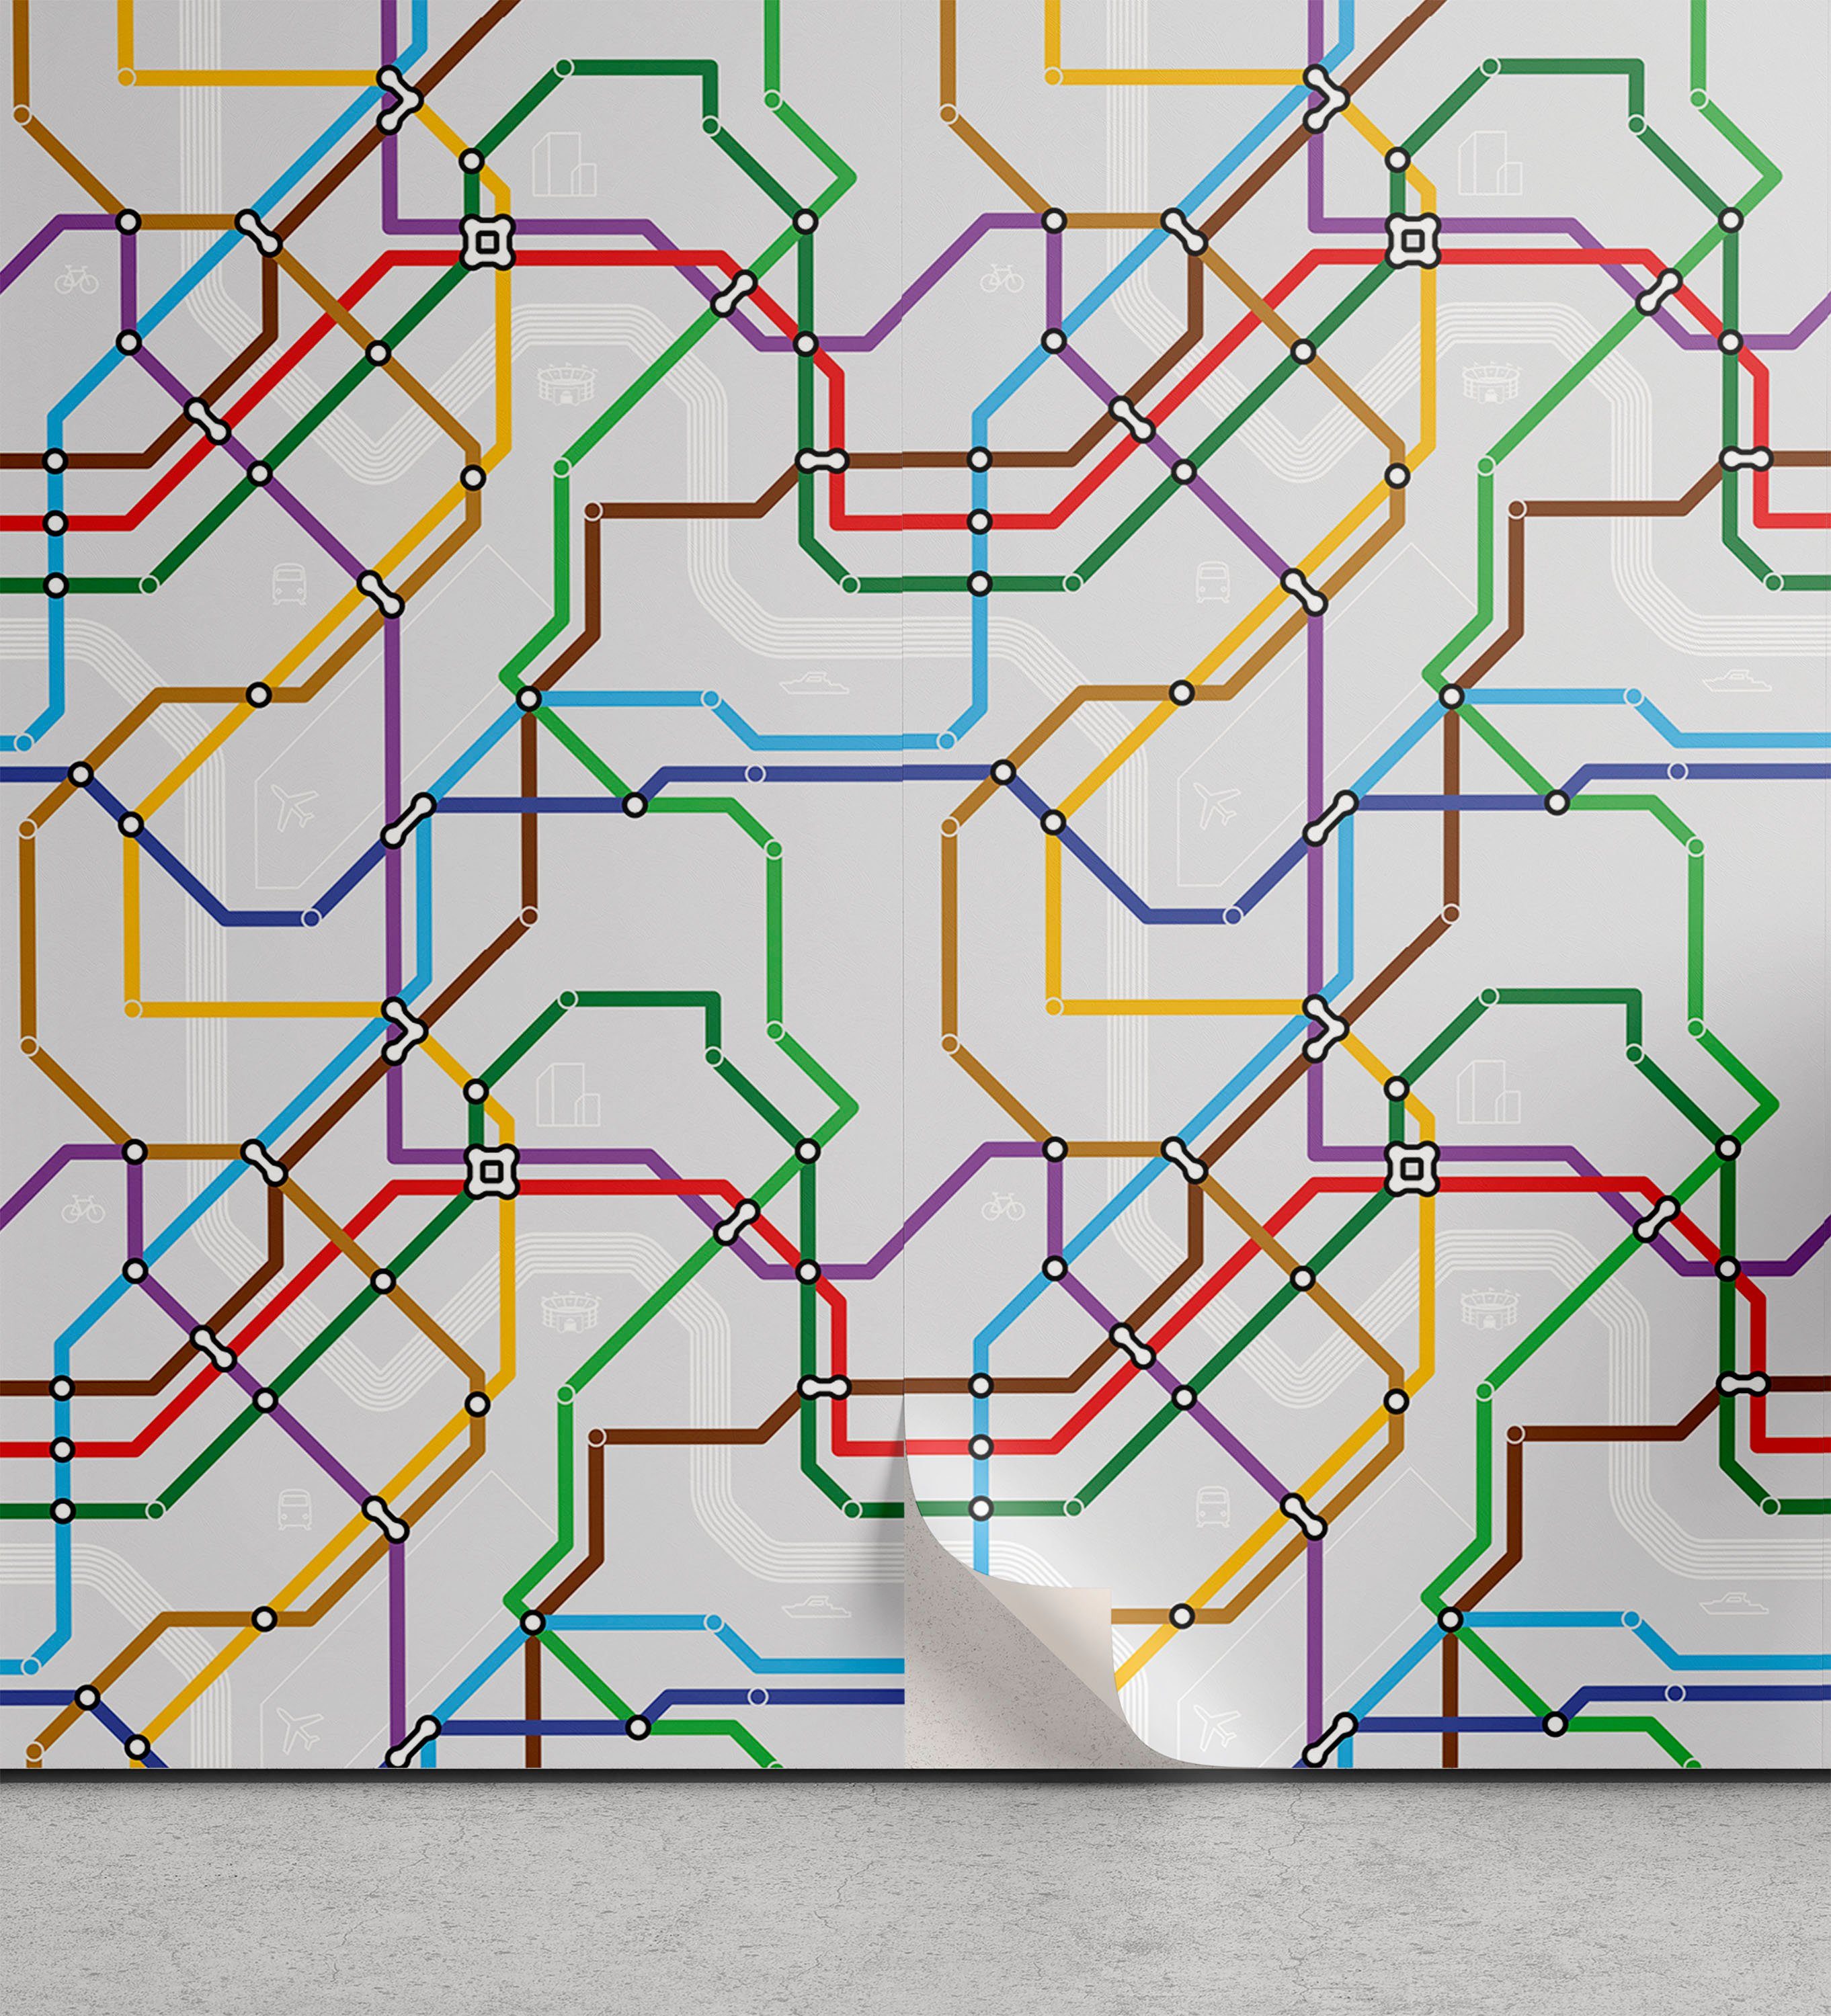 Abakuhaus Vinyltapete Karte Striped Strecke Küchenakzent, selbstklebendes Vibrant Wohnzimmer Metro